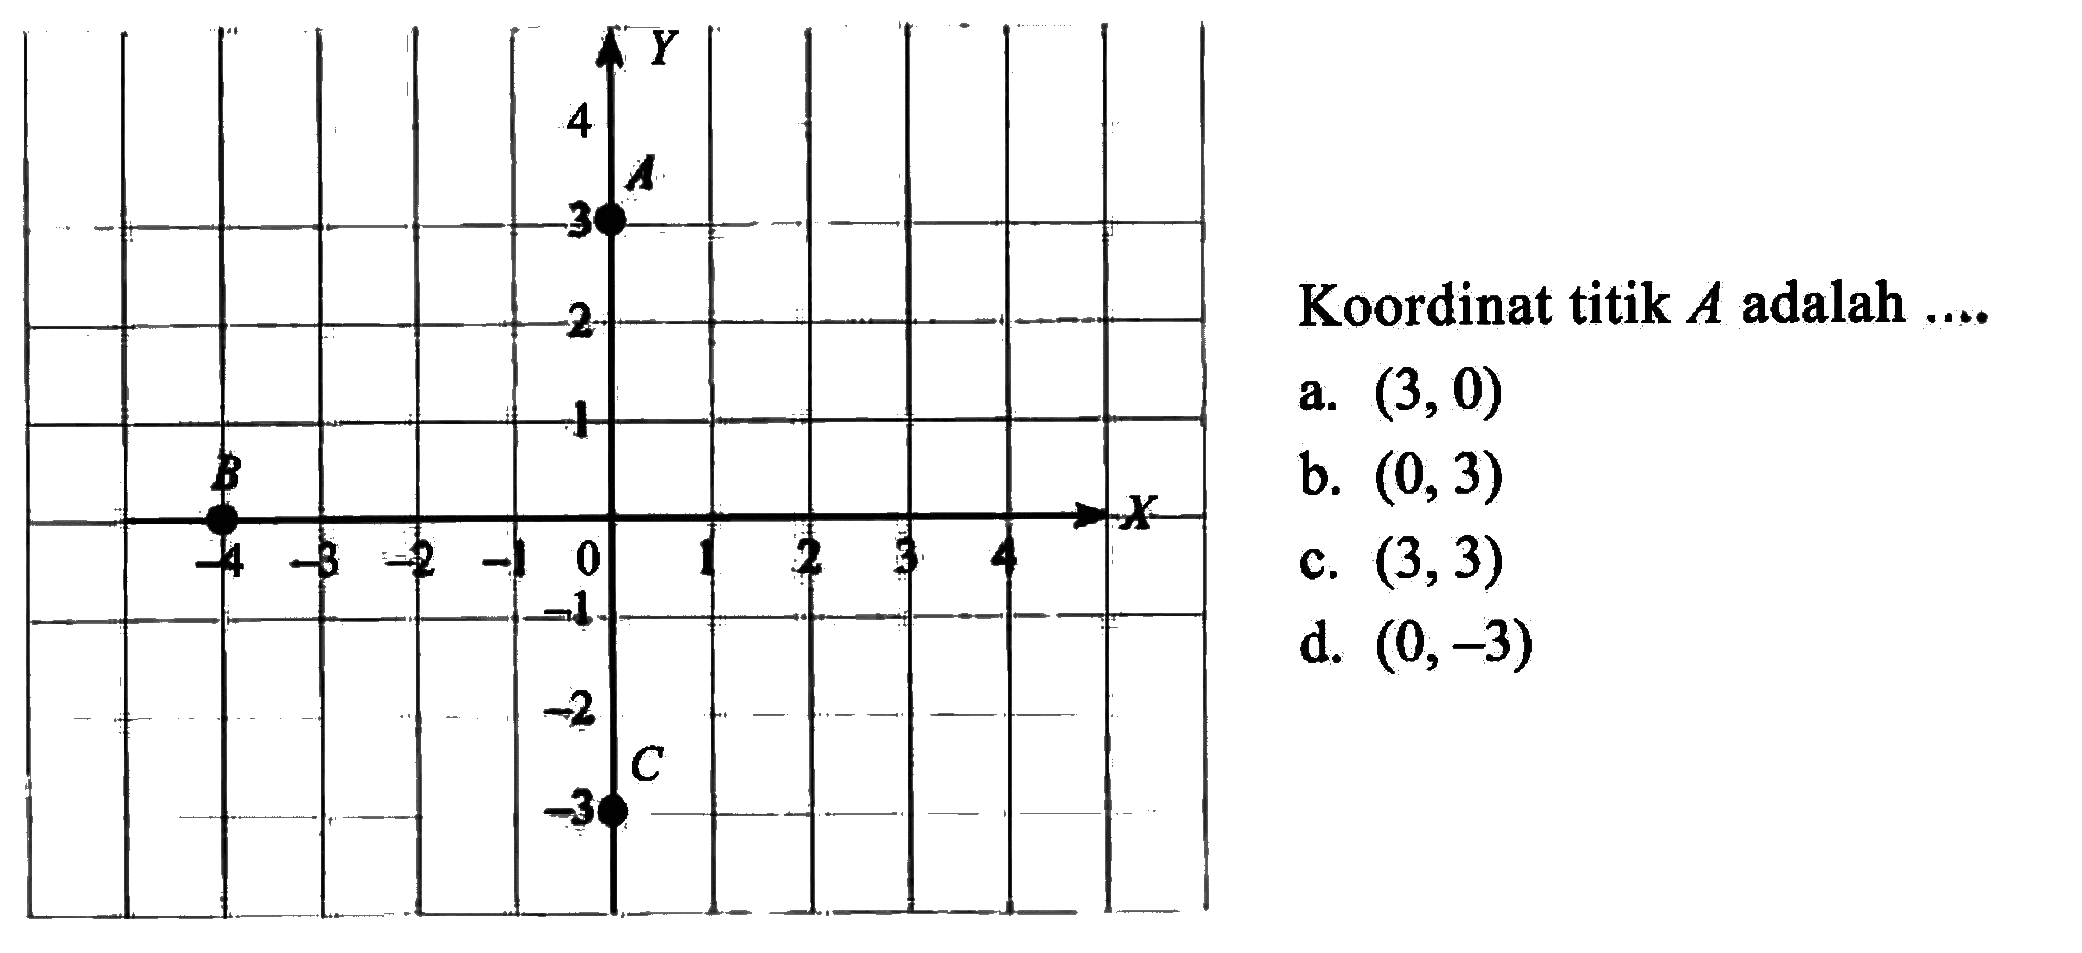 Koordinat titik A adalah a.(3,0) b. (0, 3) c.(3,3) d. (0,-3)